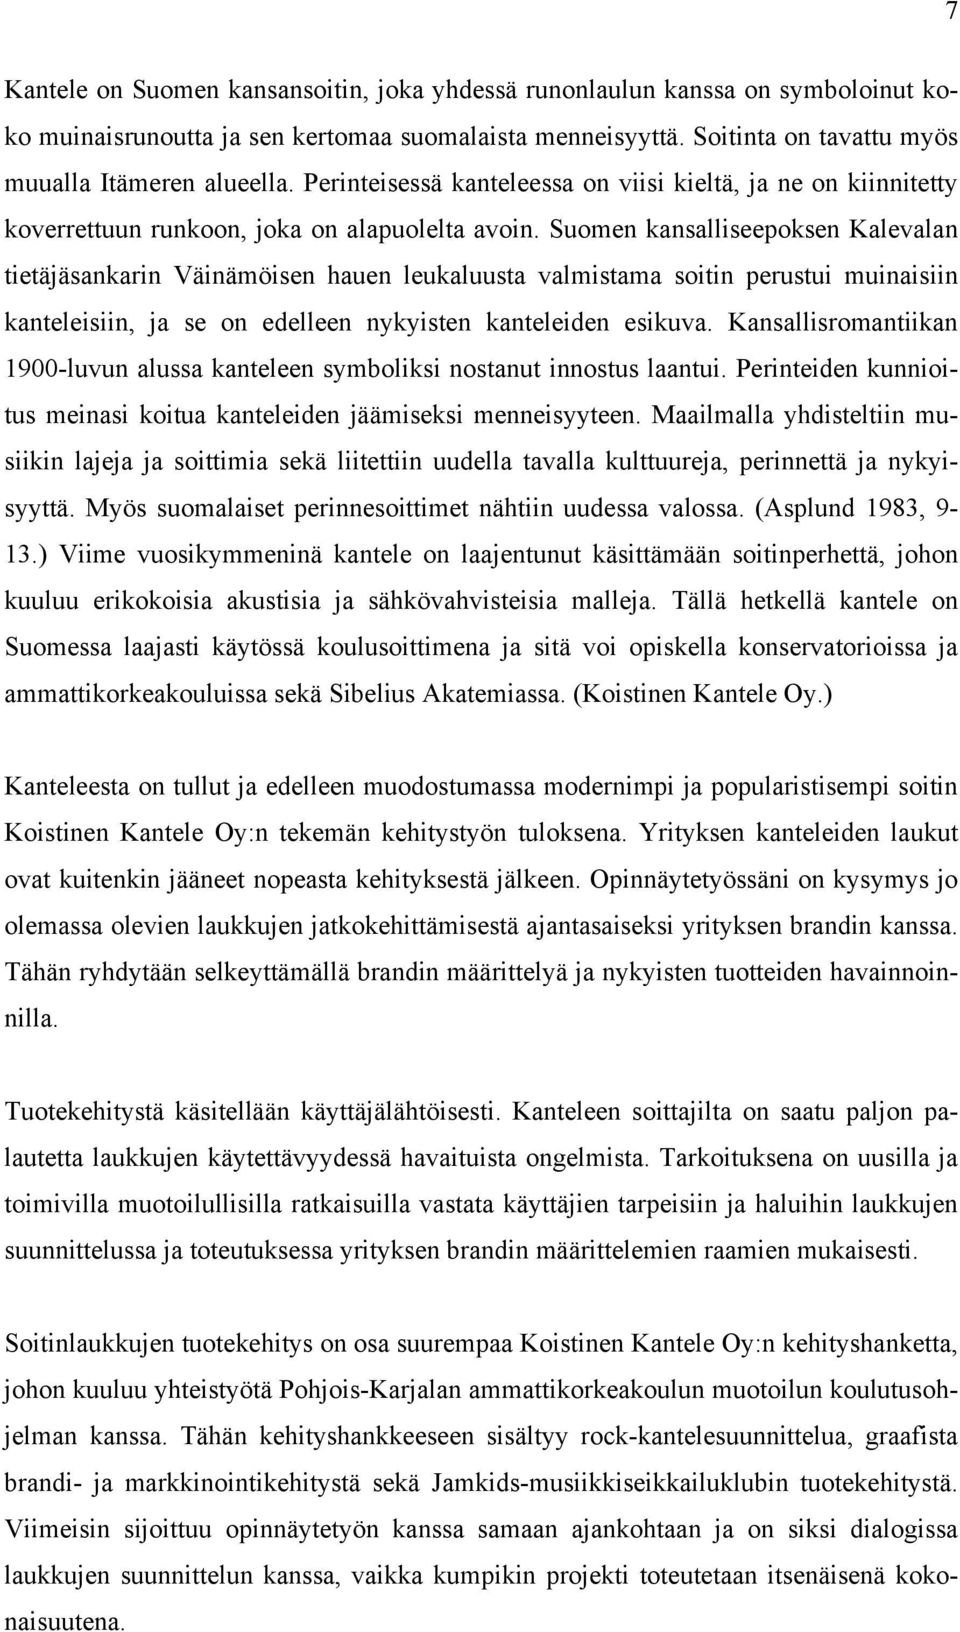 Suomen kansalliseepoksen Kalevalan tietäjäsankarin Väinämöisen hauen leukaluusta valmistama soitin perustui muinaisiin kanteleisiin, ja se on edelleen nykyisten kanteleiden esikuva.